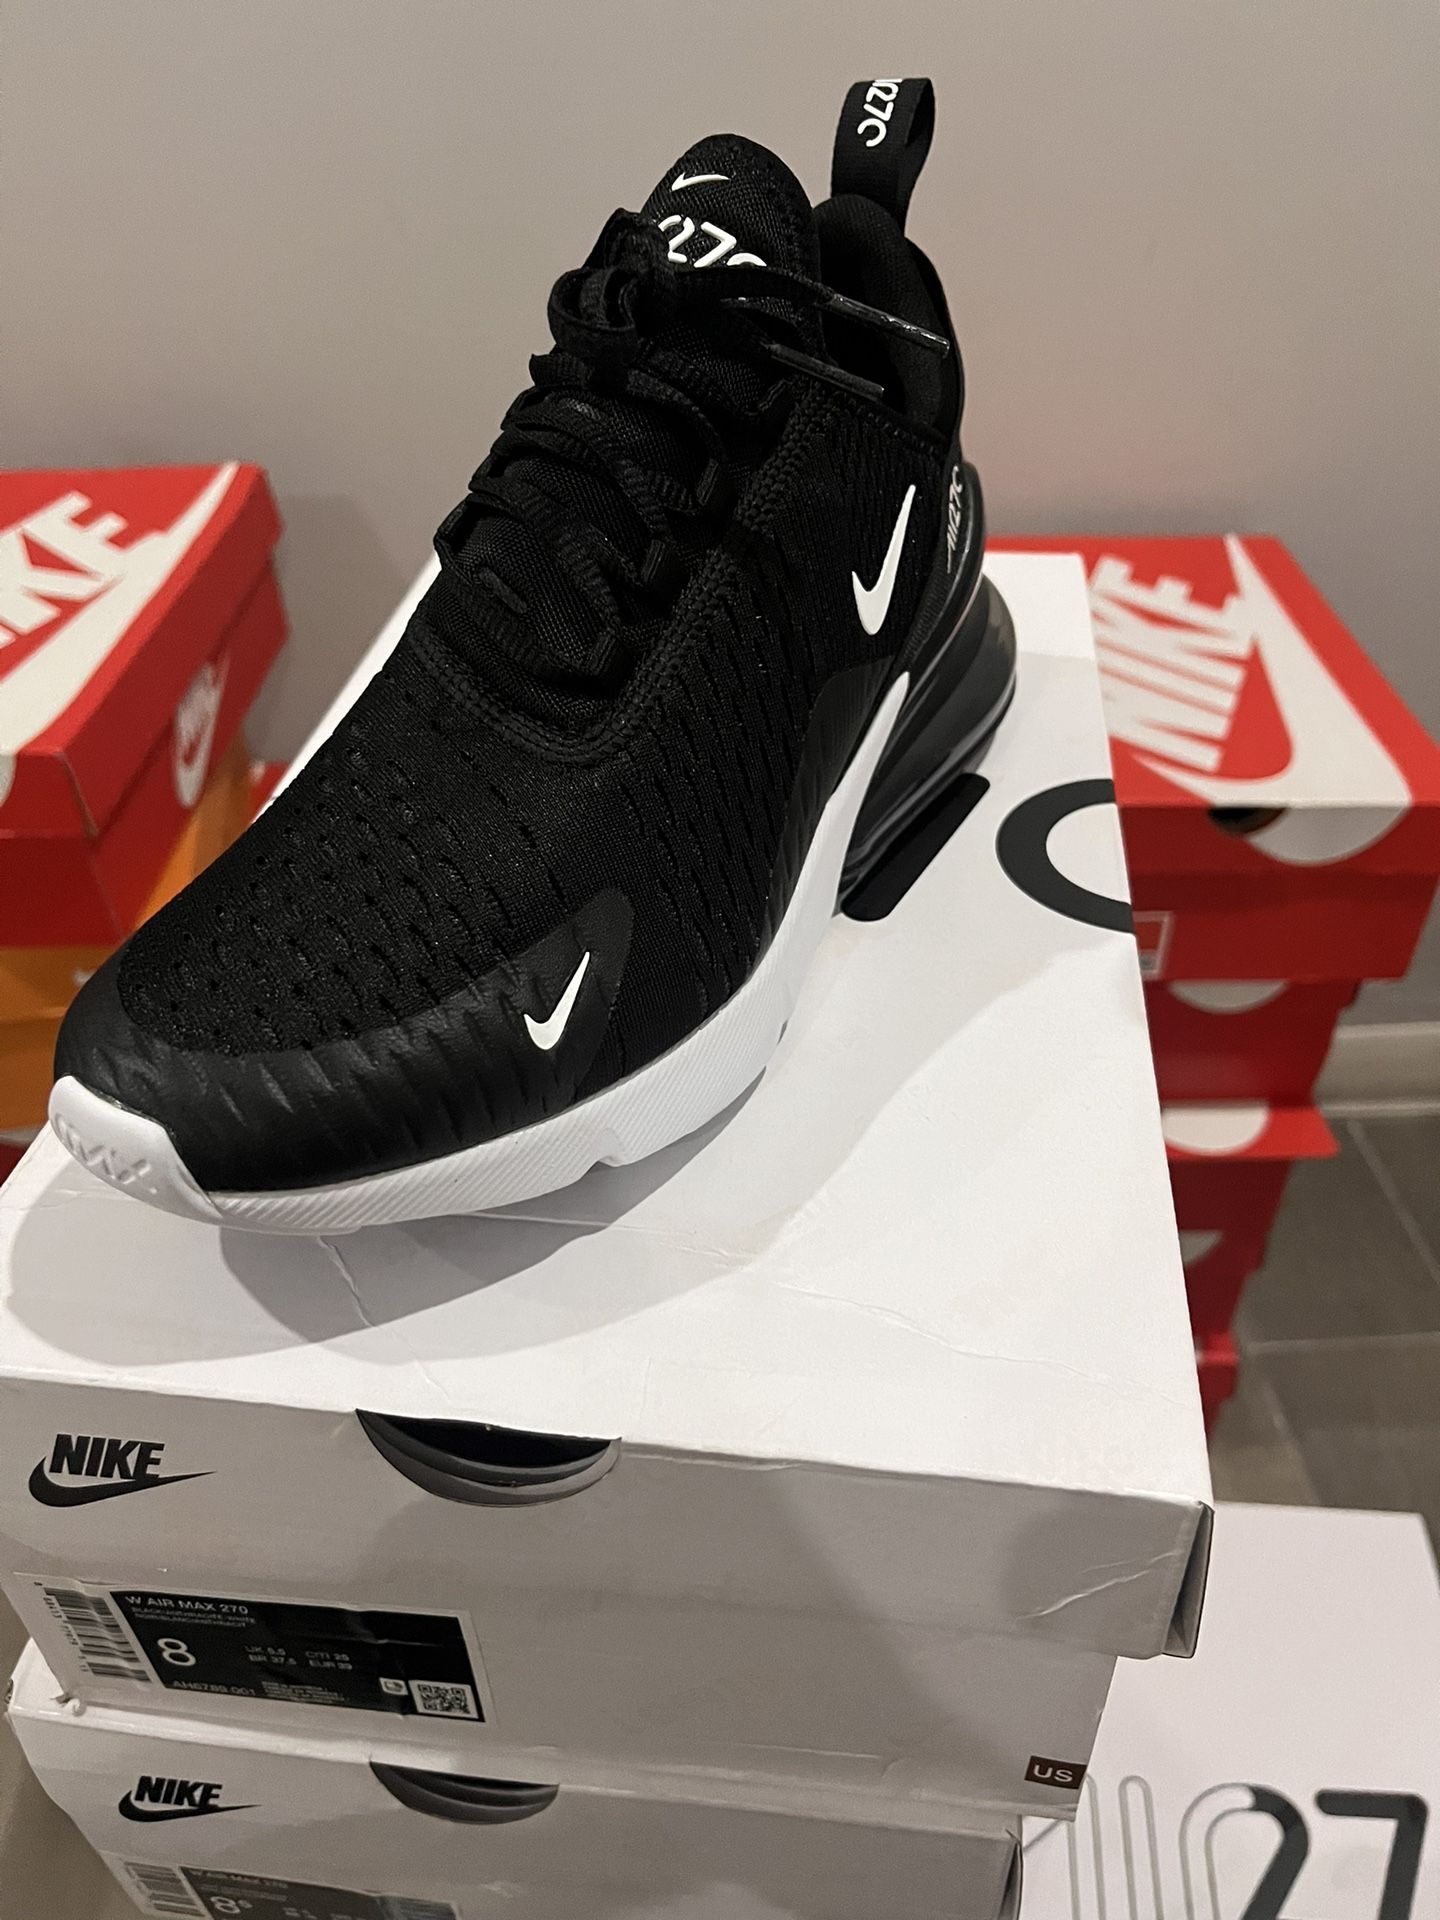 Nike 270 